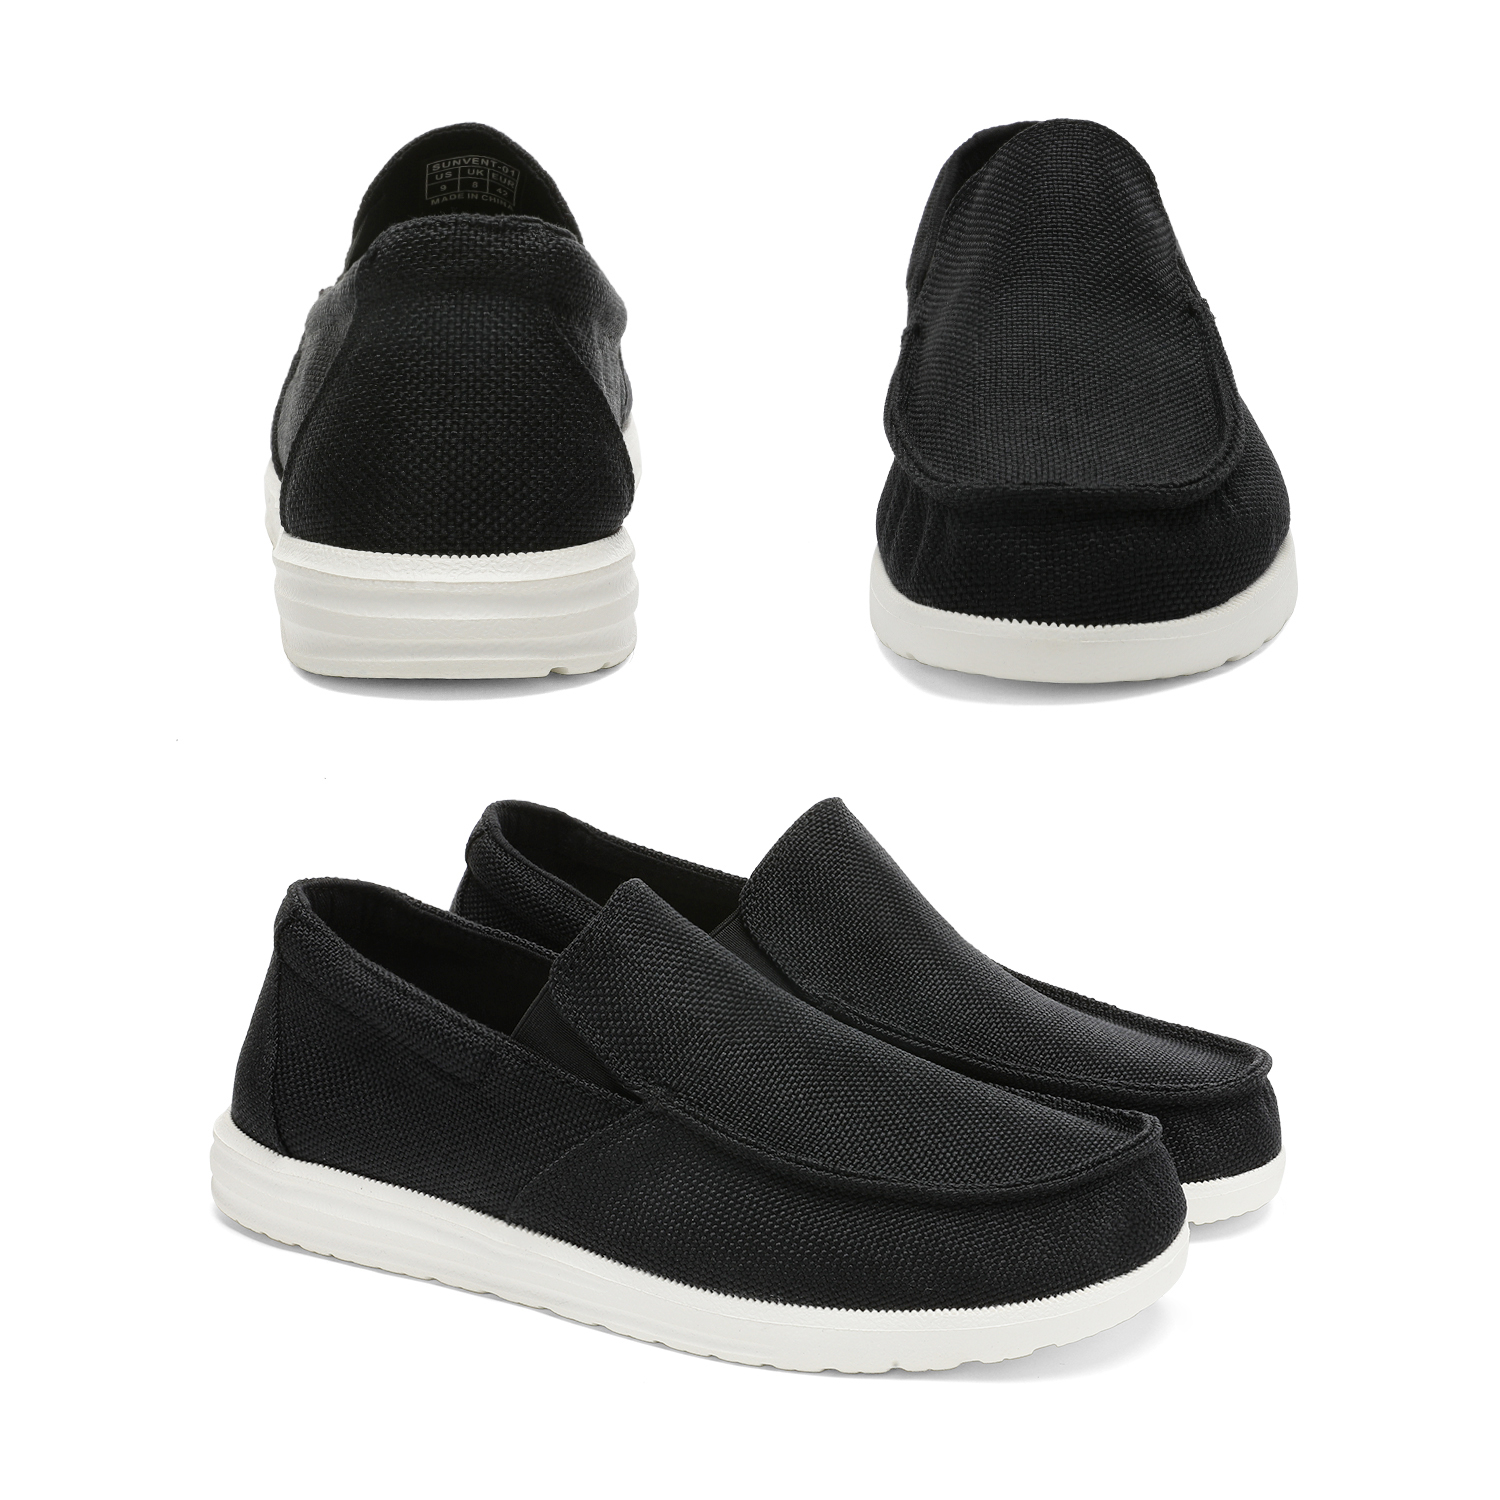 Bruno Marc Men's Slip On Loafer Walking Shoes SUNVENT-01 BLACK size 10 - image 4 of 5